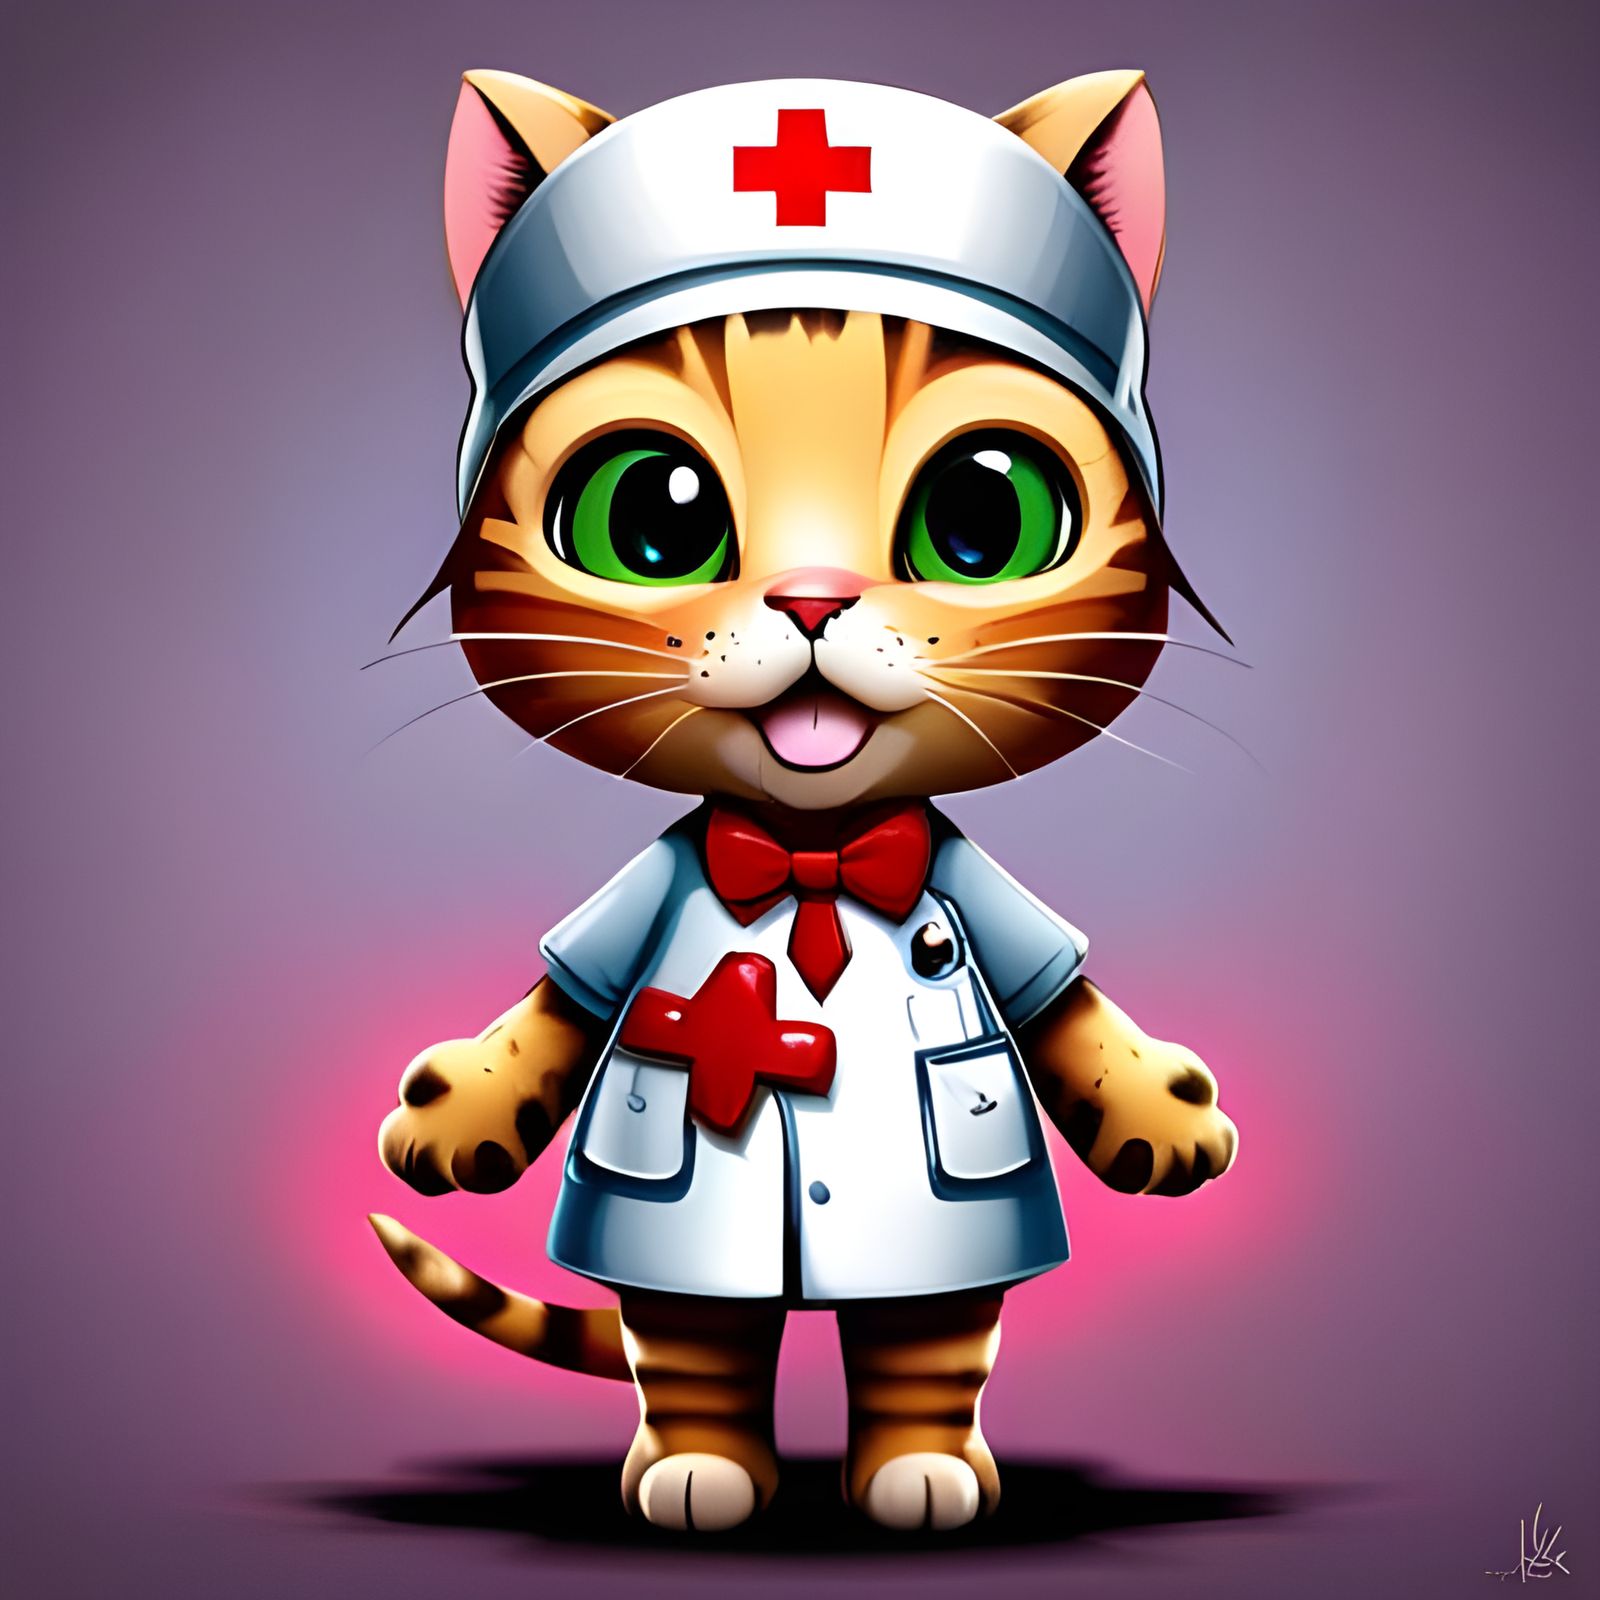 Nurse Cat 